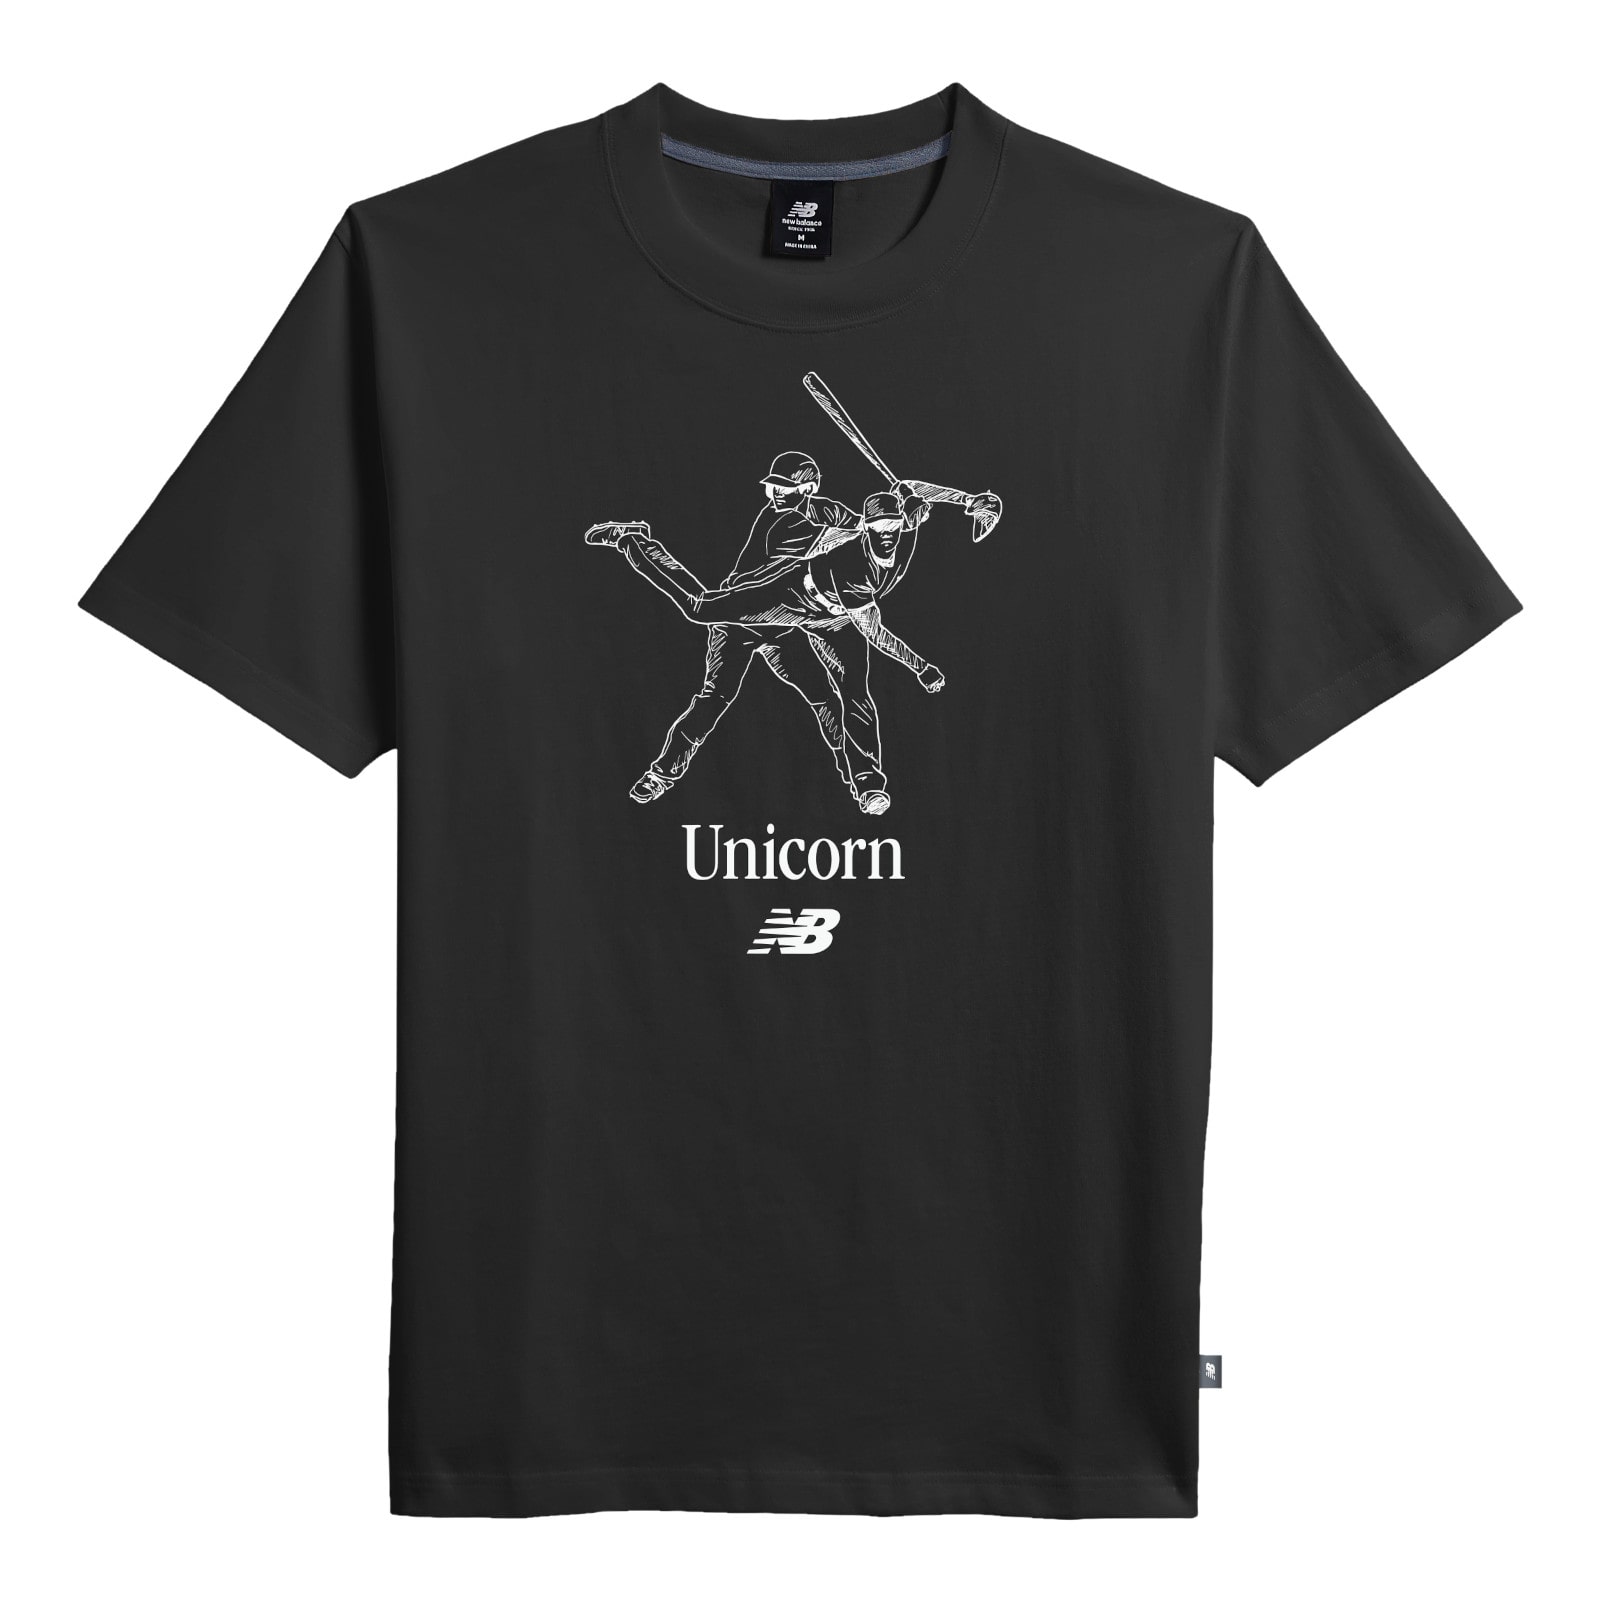 The UnicornOtBbNV[gX[uTVc